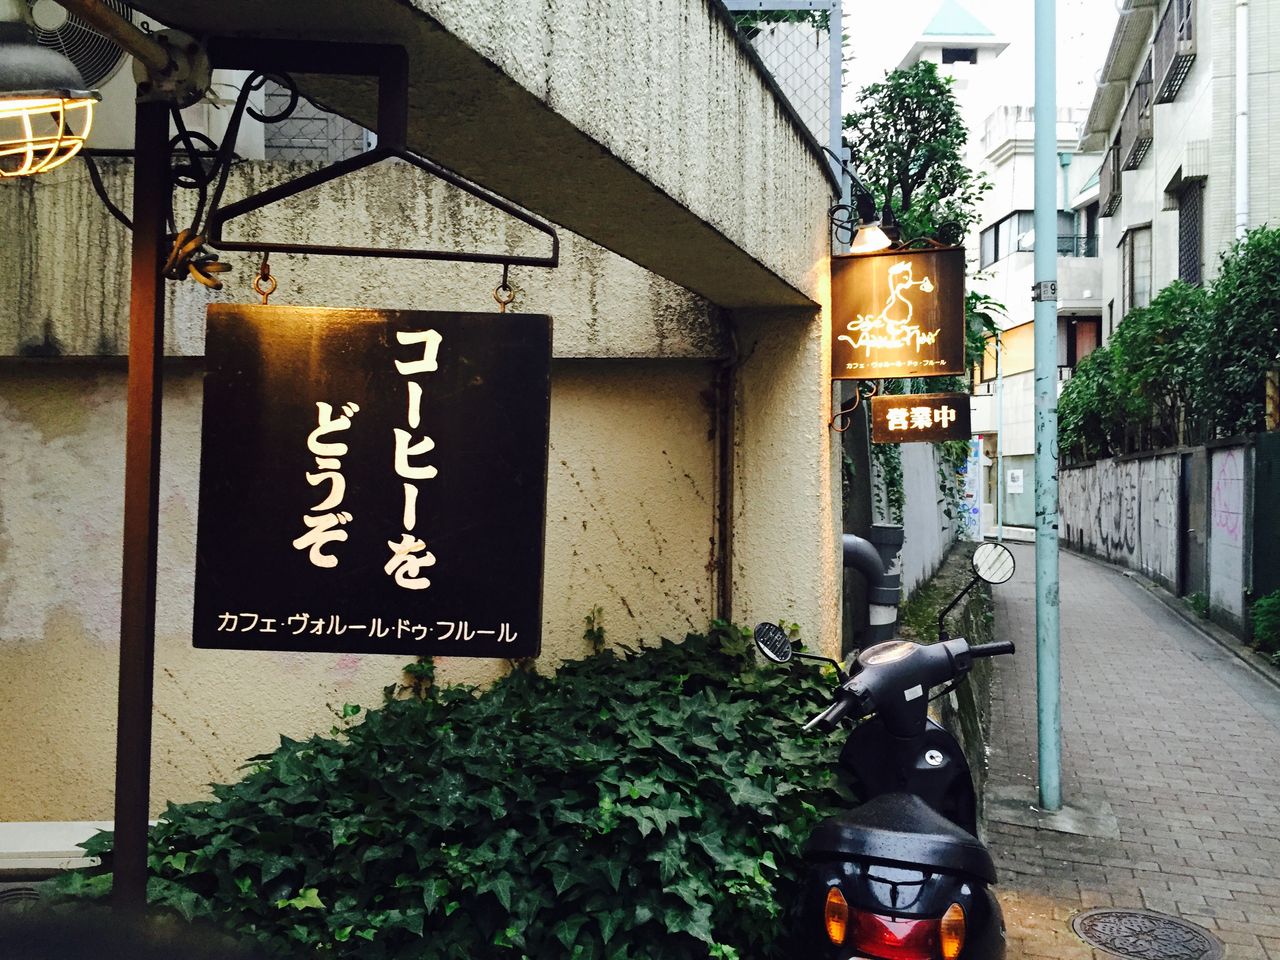 原宿 隠れ家 カフェ 東京 渋谷を美味しく楽しく生きていく 東京 渋谷 神奈川食べ歩き